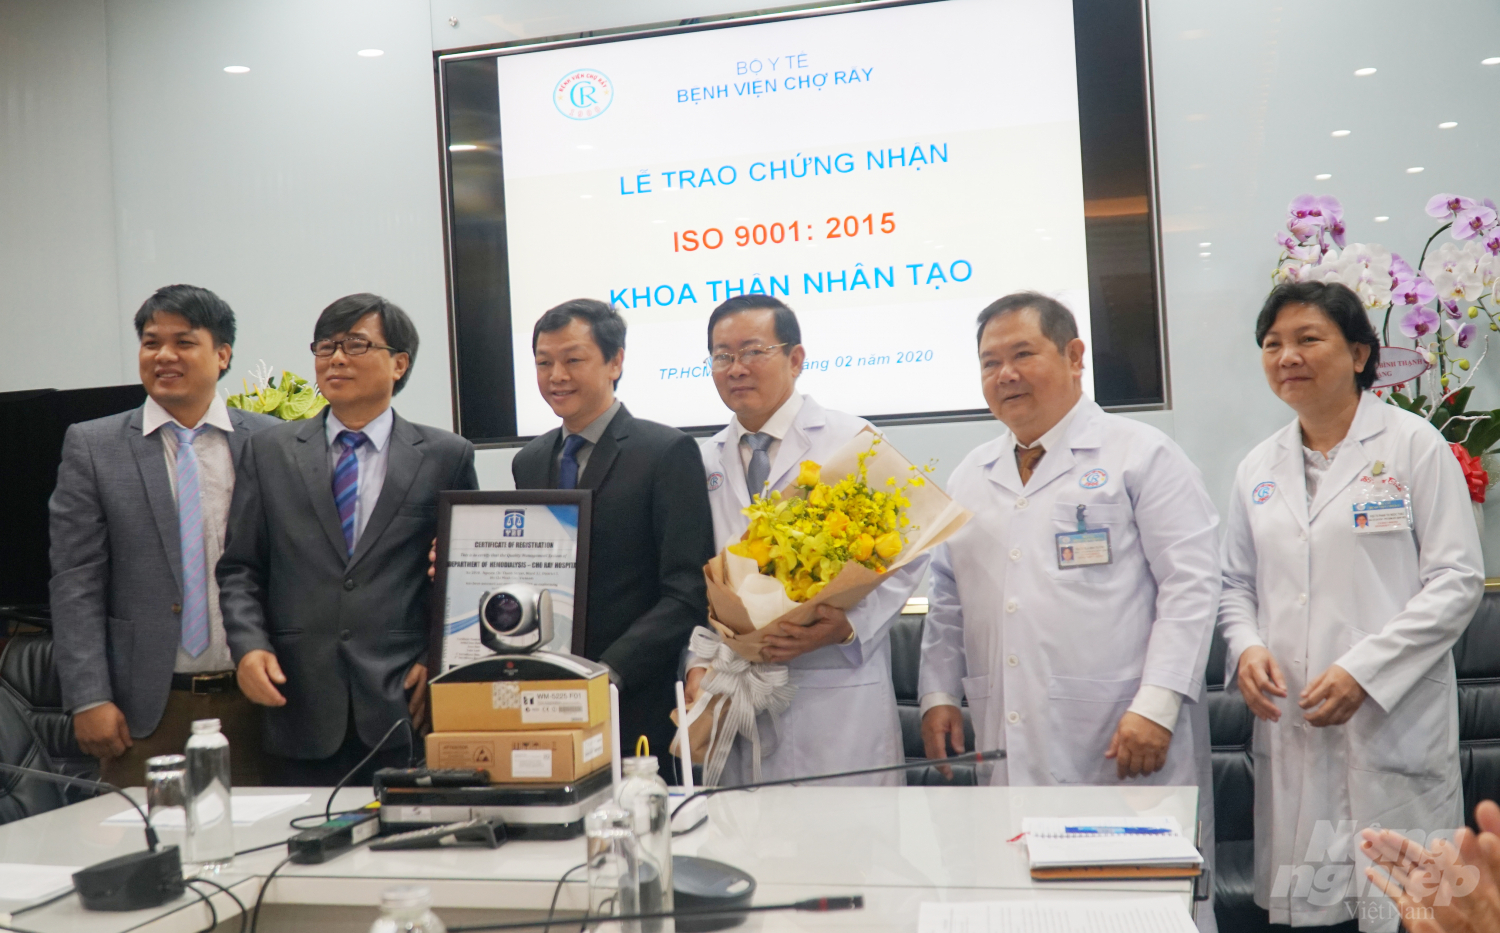 Bệnh viện Chợ Rẫy (TP.HCM) nhận chứng nhận ISO 9001:2015 về thận nhân tạo. Ảnh: Nguyễn Thủy.